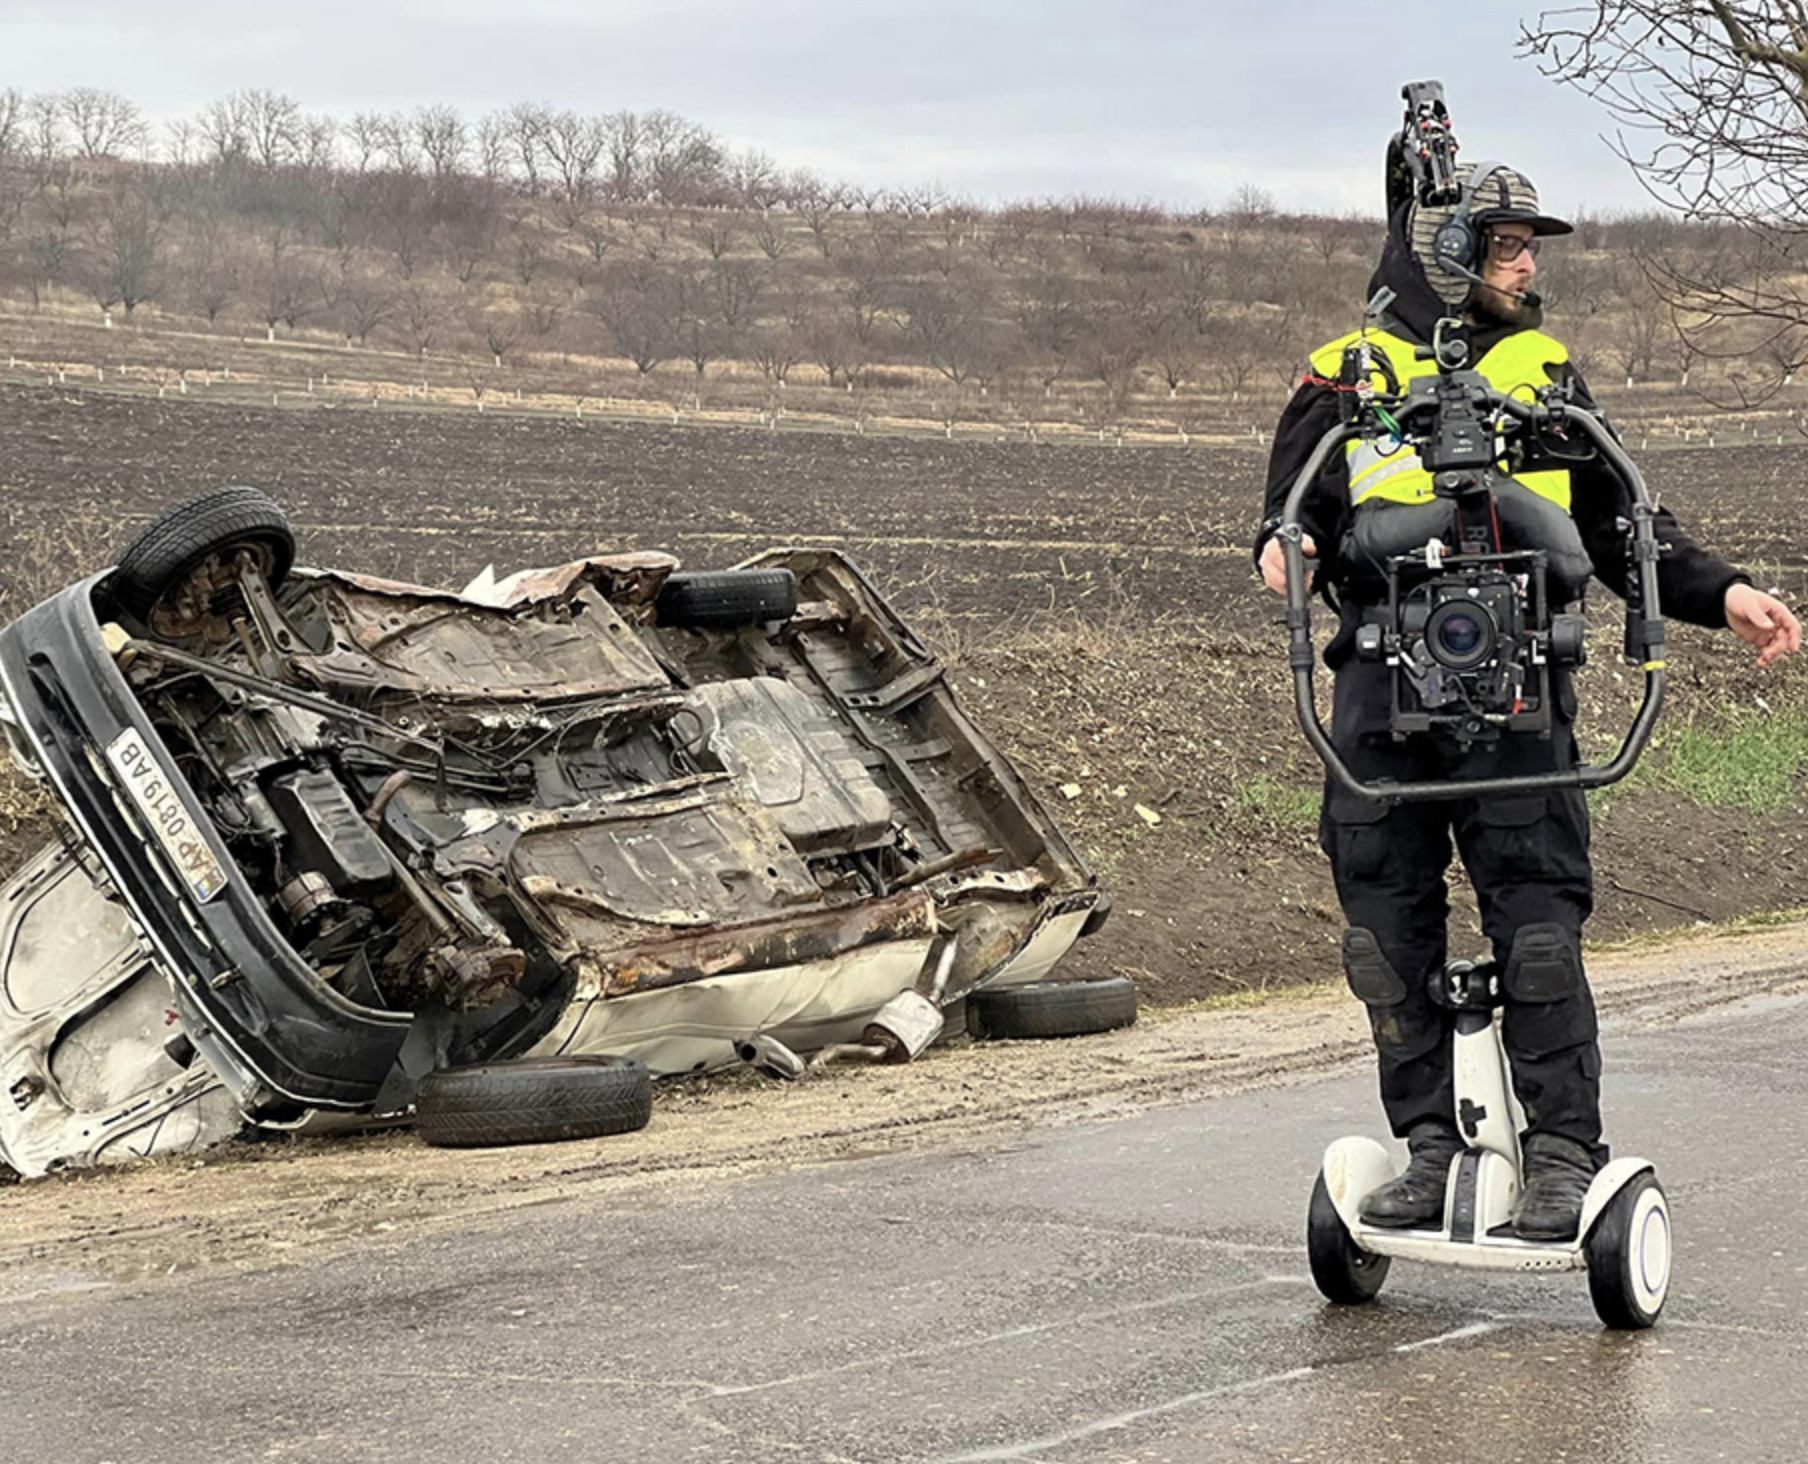 FOTO Mașini deteriorate și aparent abandonate, pe un traseu din Moldova: formează decorul unui film